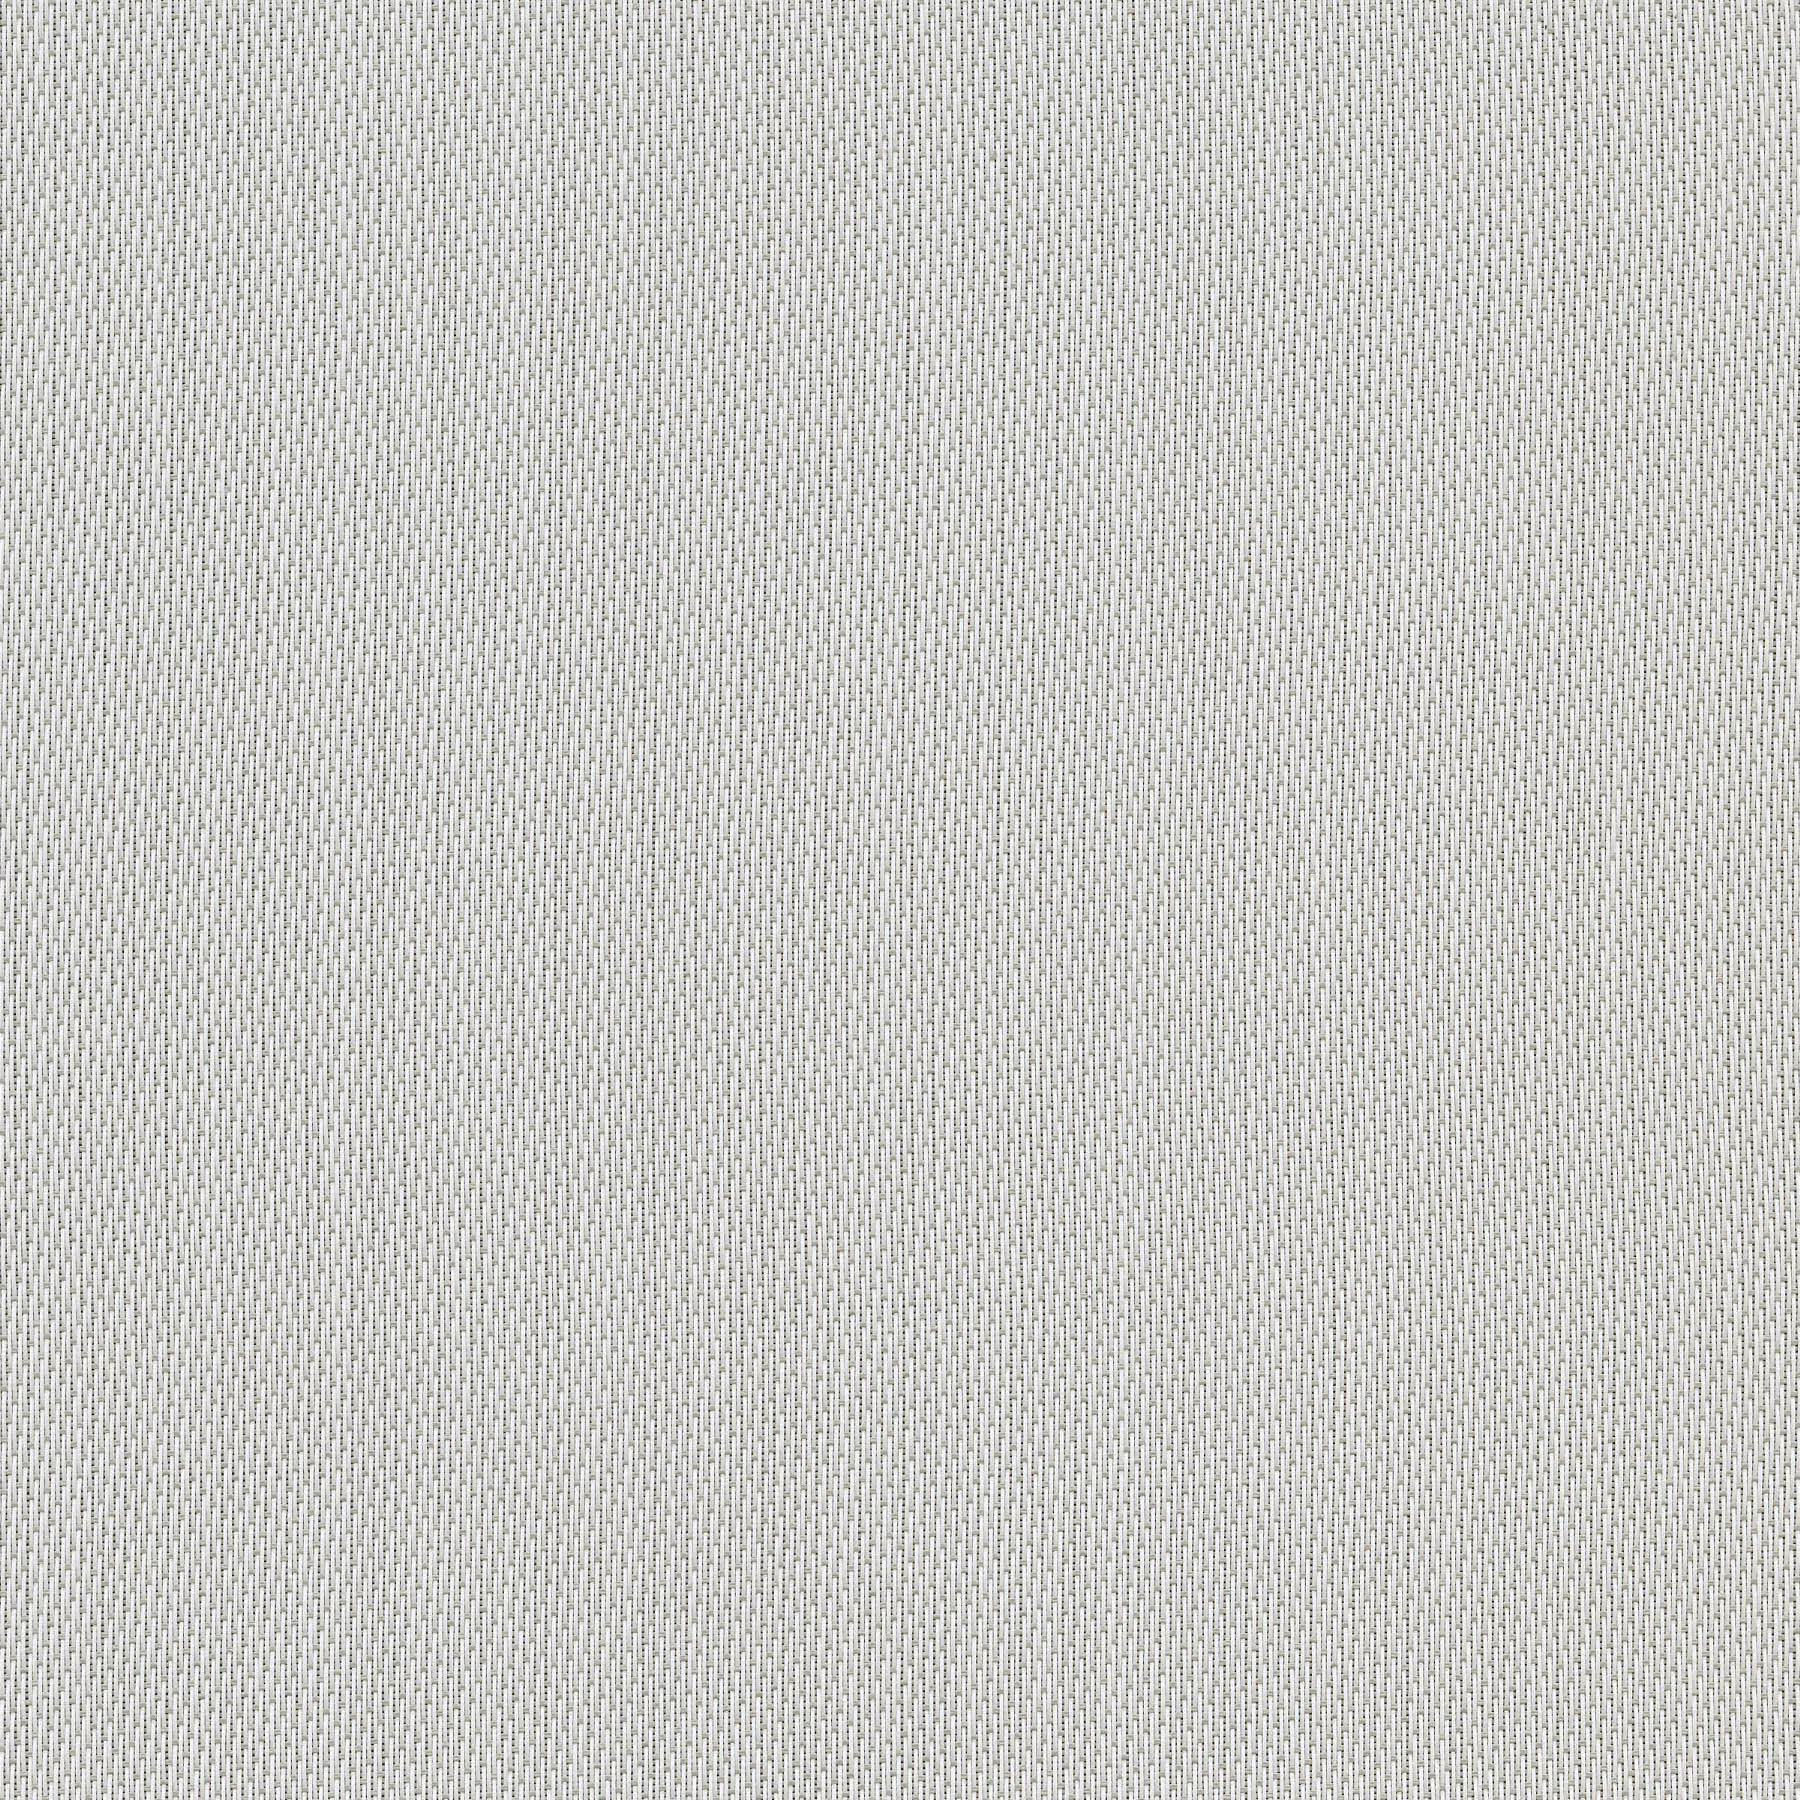 Altex - Tissu - SHEERWEAVE 2703 - Gris perle/Blanc - 166